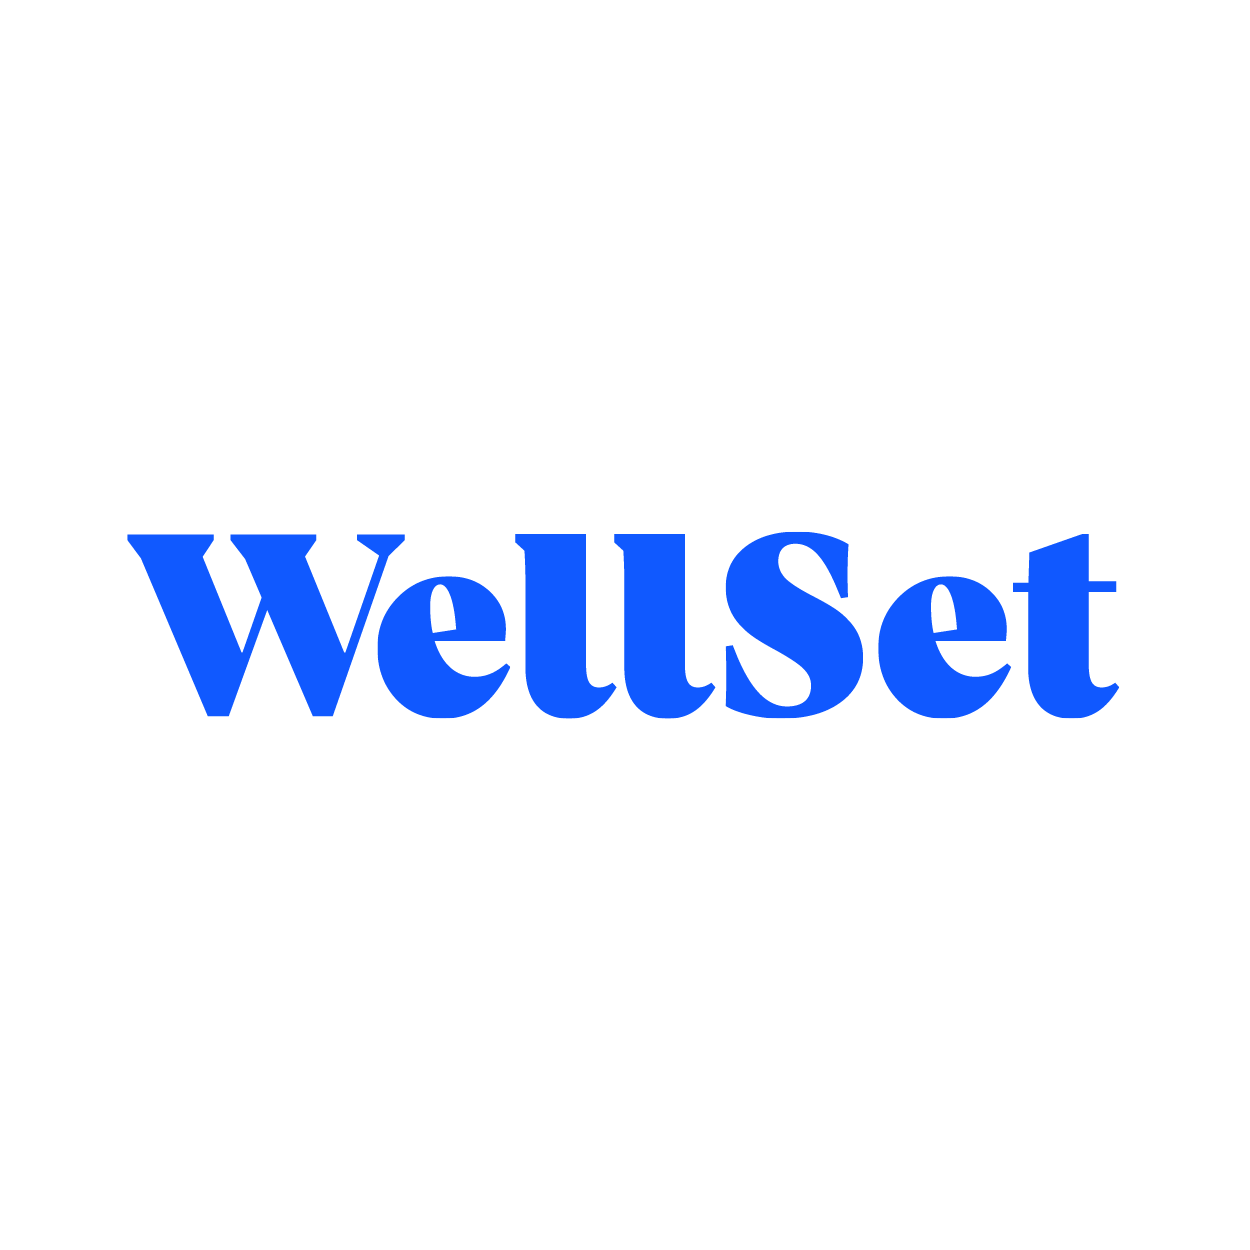 WellSet, brand strategist, Dr. Giselle Wasfi